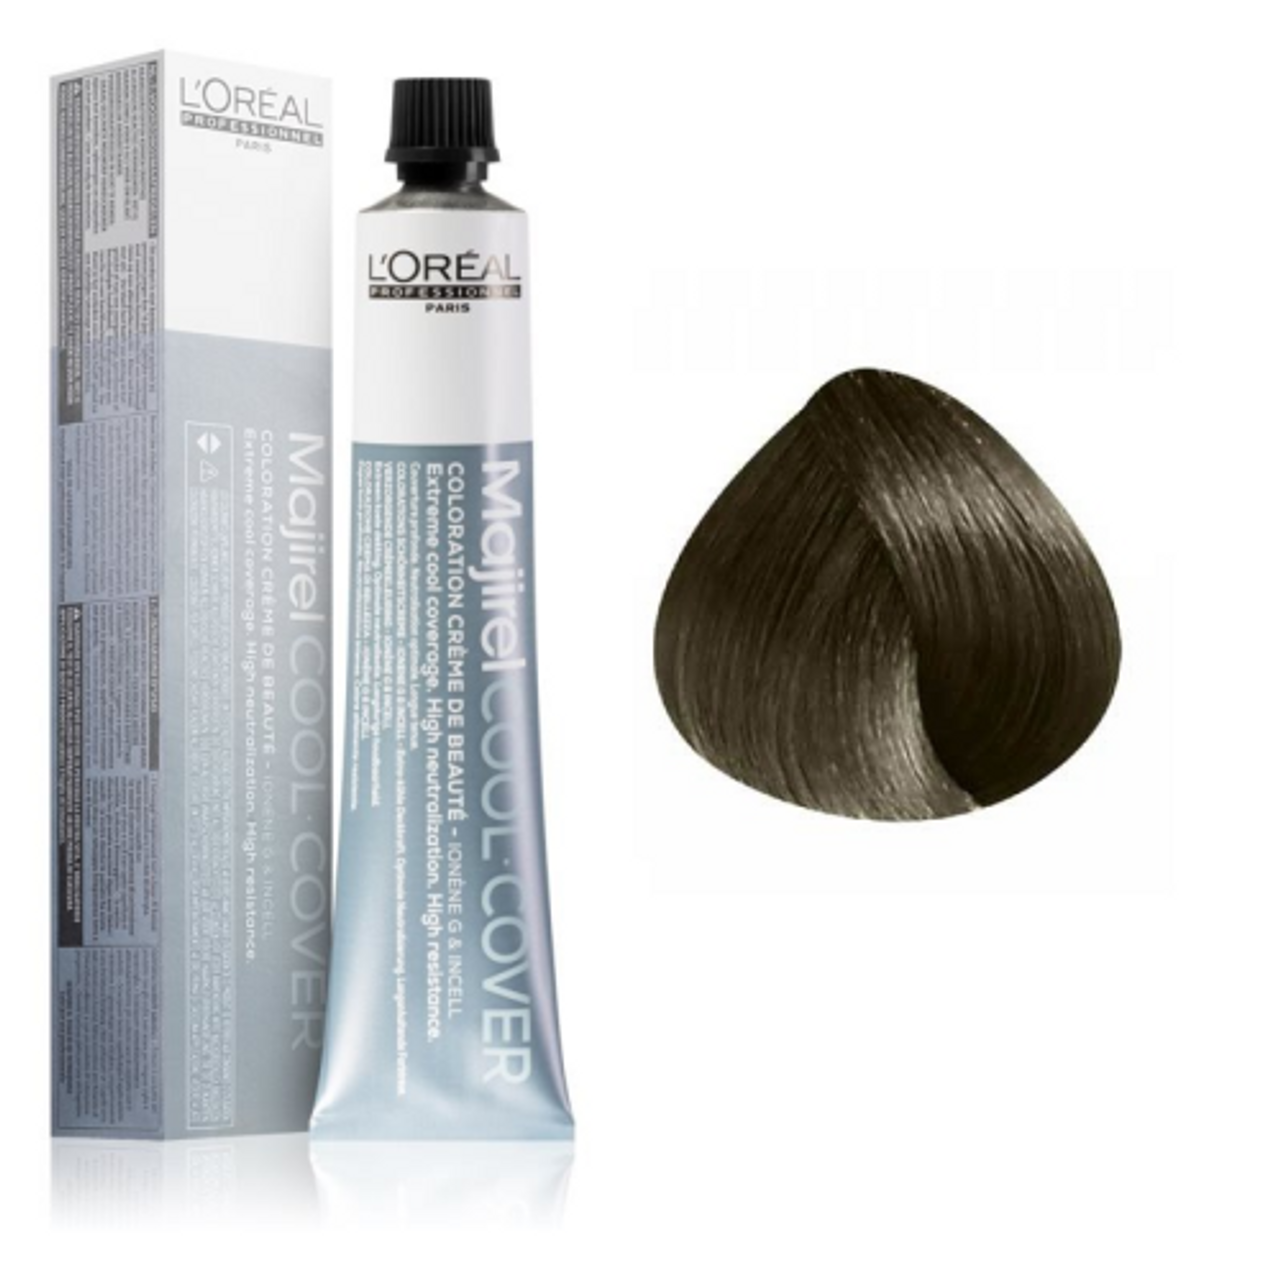 Salon Essentials | L'Oreal Majirel Cool Cover 6.1 50ml - Dark Ash Blonde